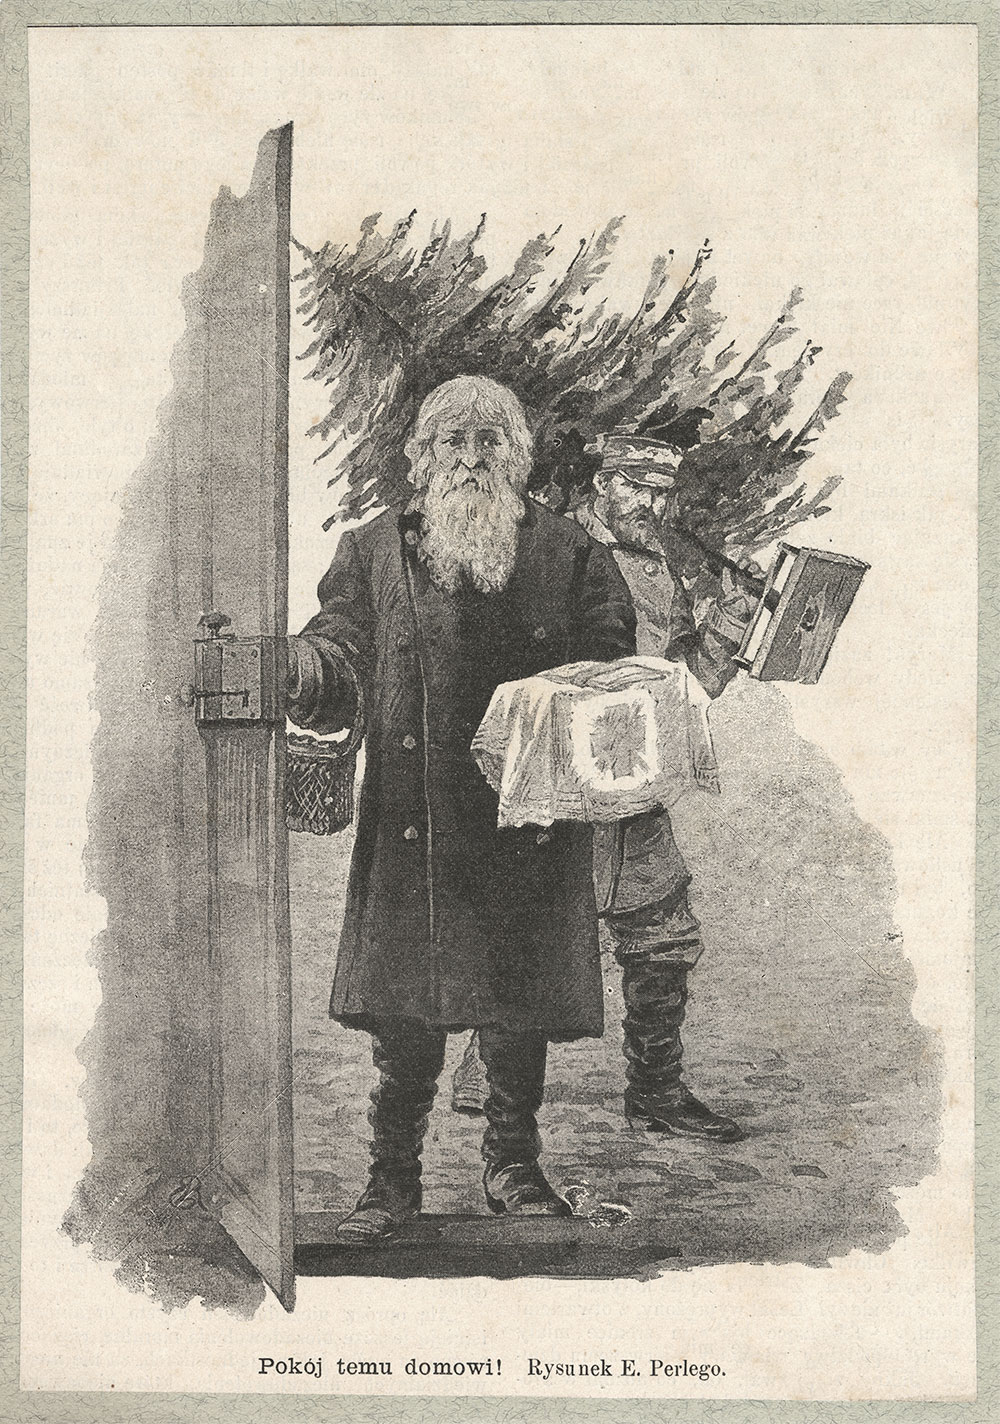 Grafika przedstawia starszego mężczyznę z brodą, otwierającego drzwi. W prawej ręce trzyma opłatki, na lewym ramieniu przywieszony koszyk. Na drugim planie mężczyzna na lewym ramieniu dźwiga choinkę. W dolnej części napis: "Pokój temu domowi!" Rysunek E. Perlego